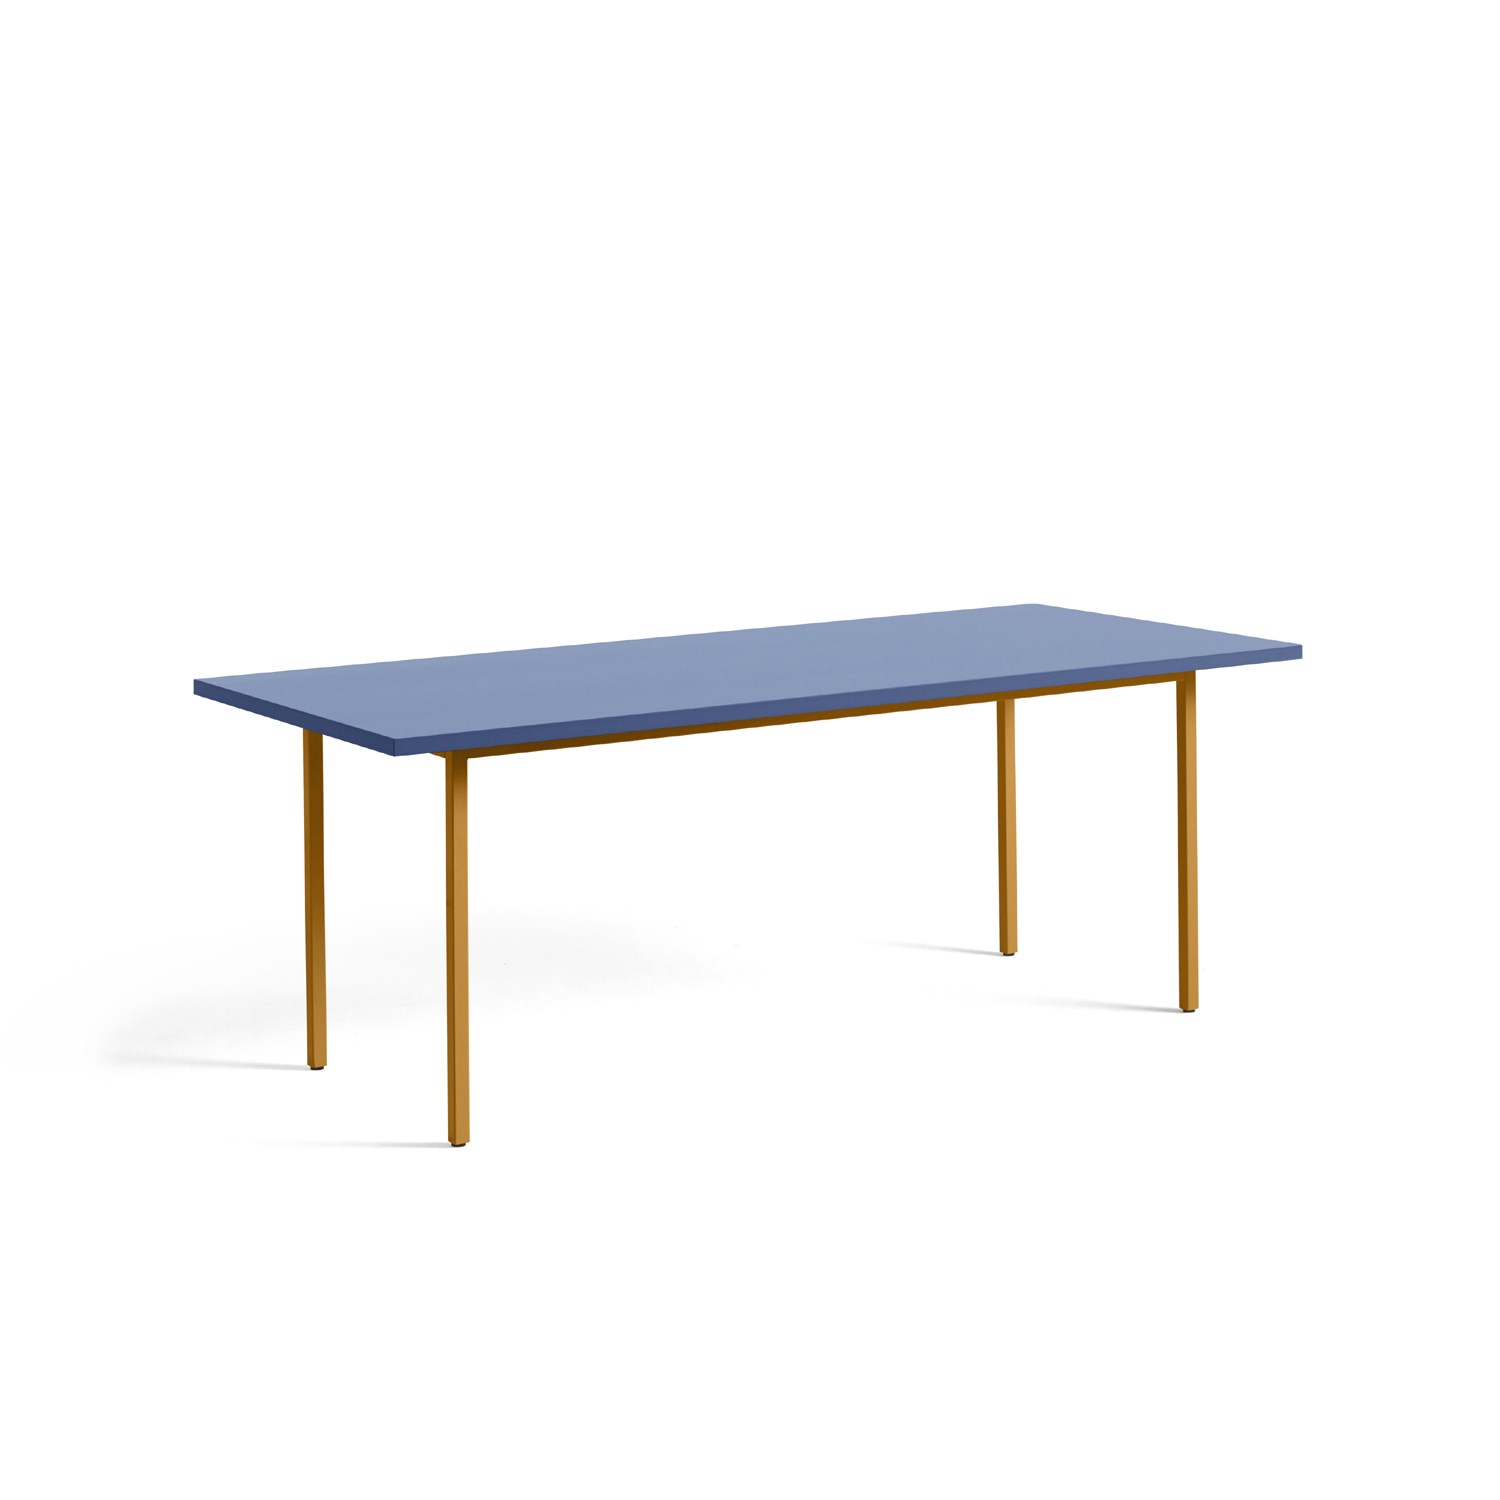 Skuespiller talsmand forråde Hay - spisebord - Two-Colour - blå bordplade og gule ben - 200x90cm